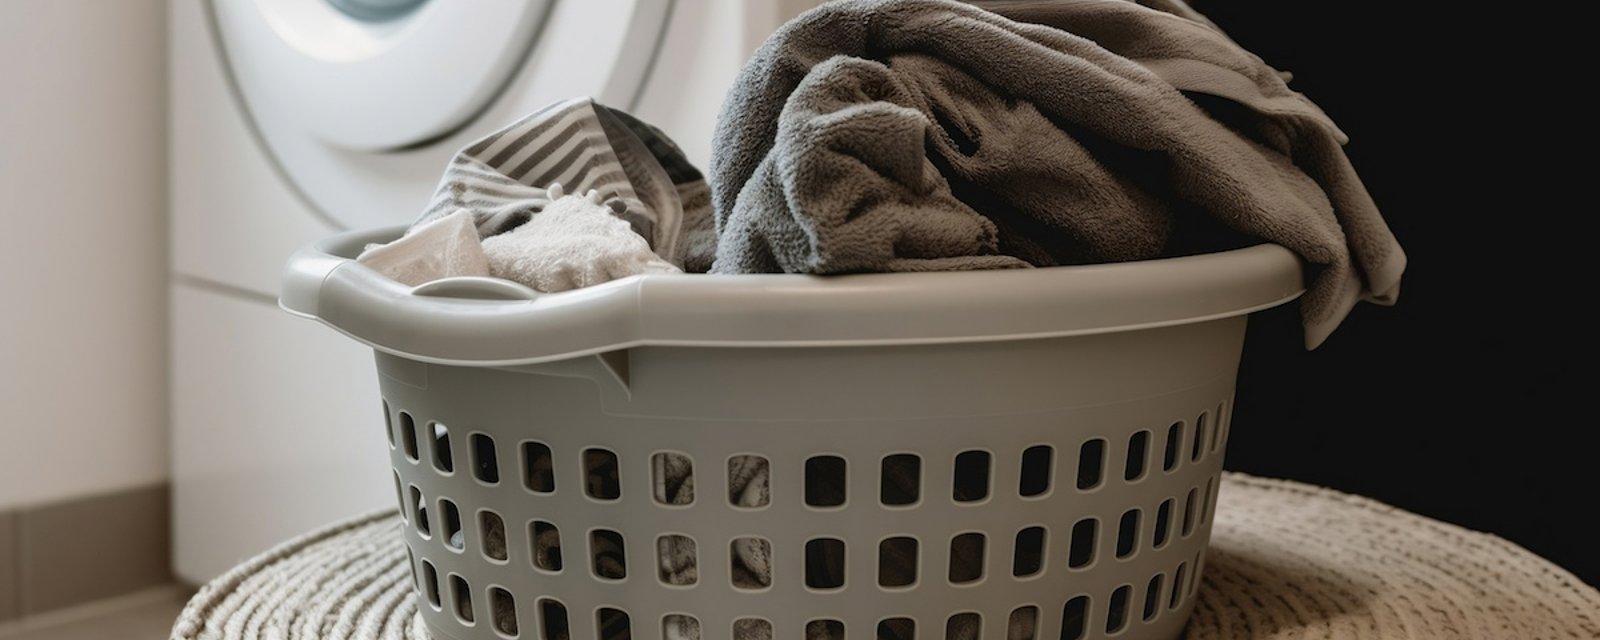 5 produits du quotidien que vous devriez ajouter à votre lessive